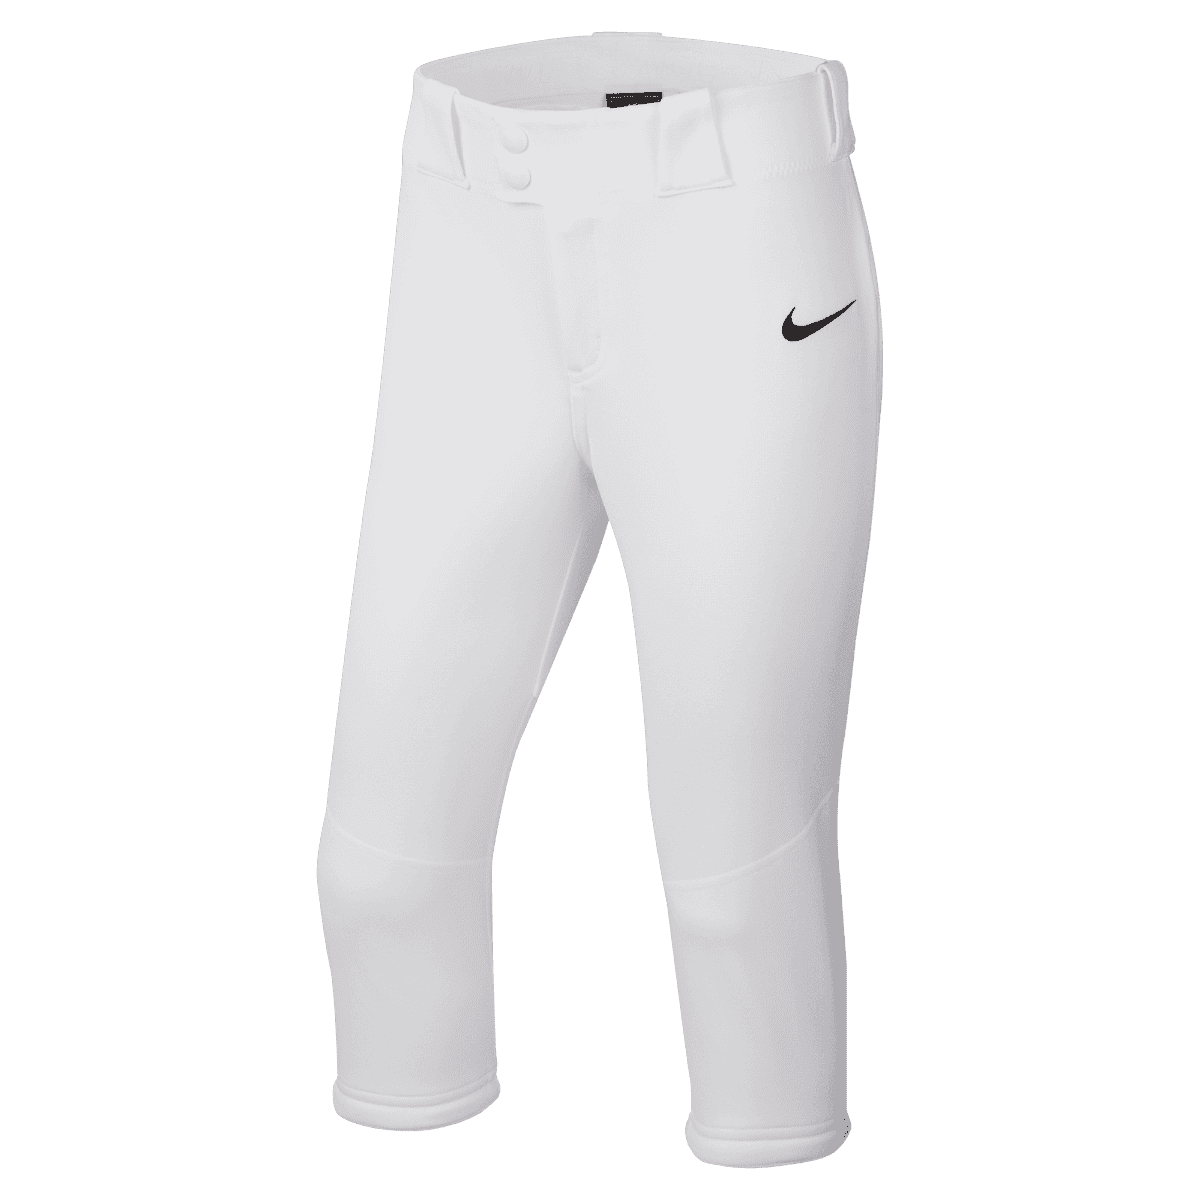 Nike Girls Big Kids Vapor Select Softball Pants - Walmart.com